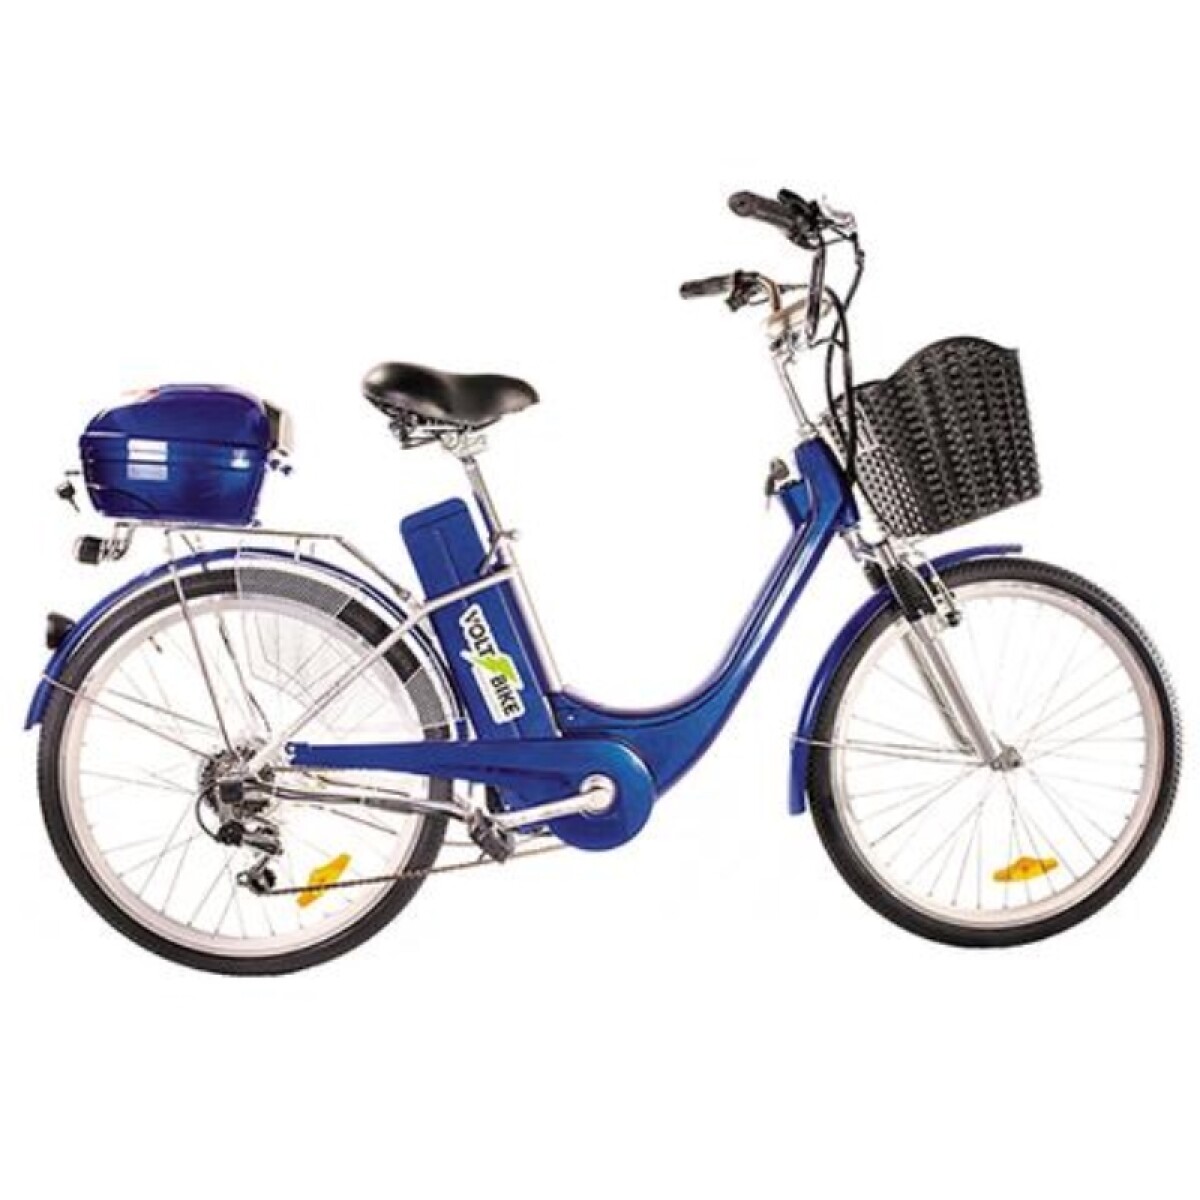 Bicicleta Electrica Voltbike Clasica Bateria Gel - Azul 